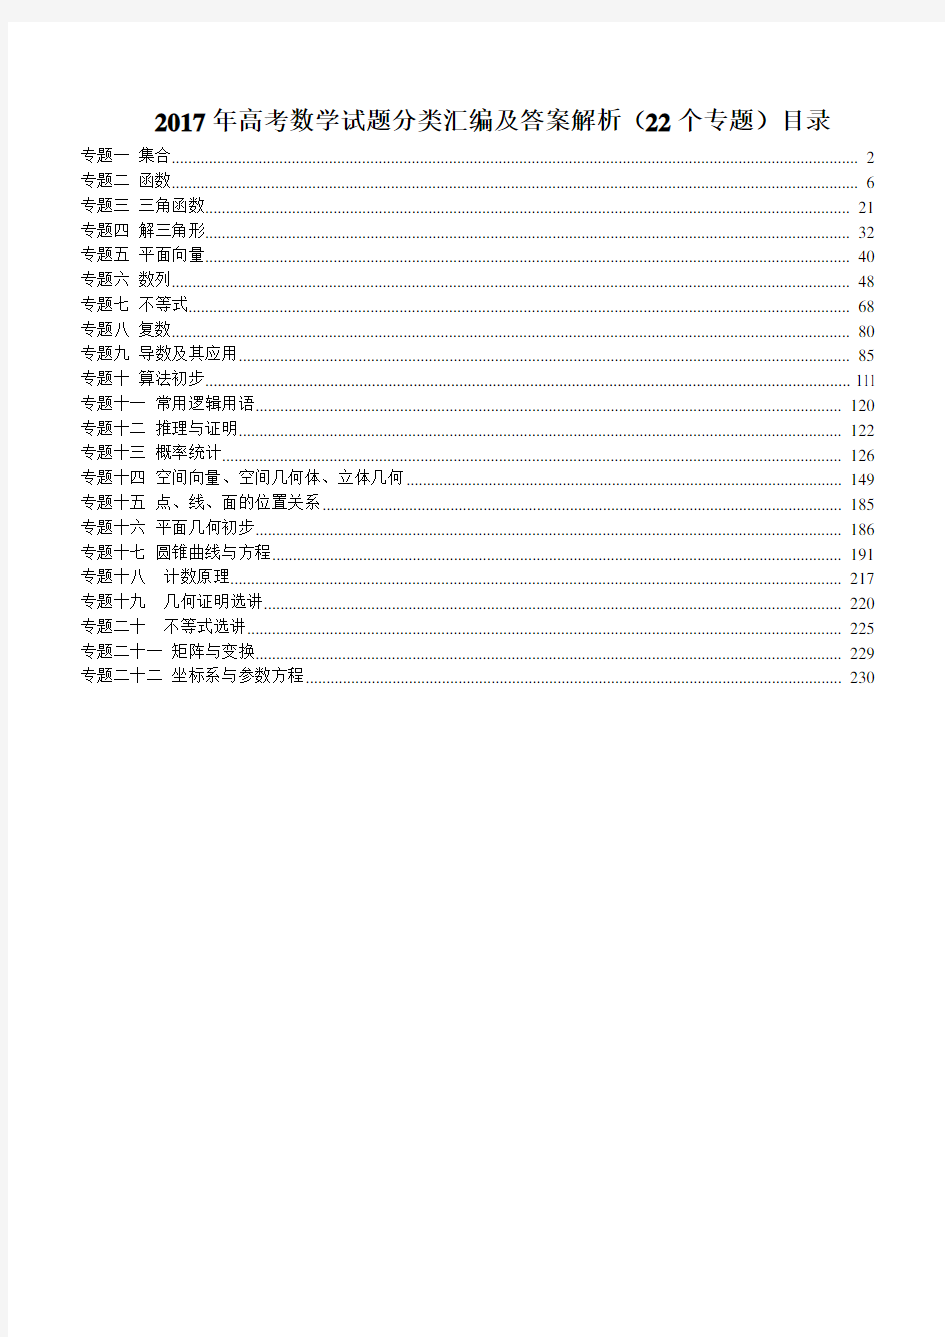 2017高考数学试题分类汇编(22个专题)_图文